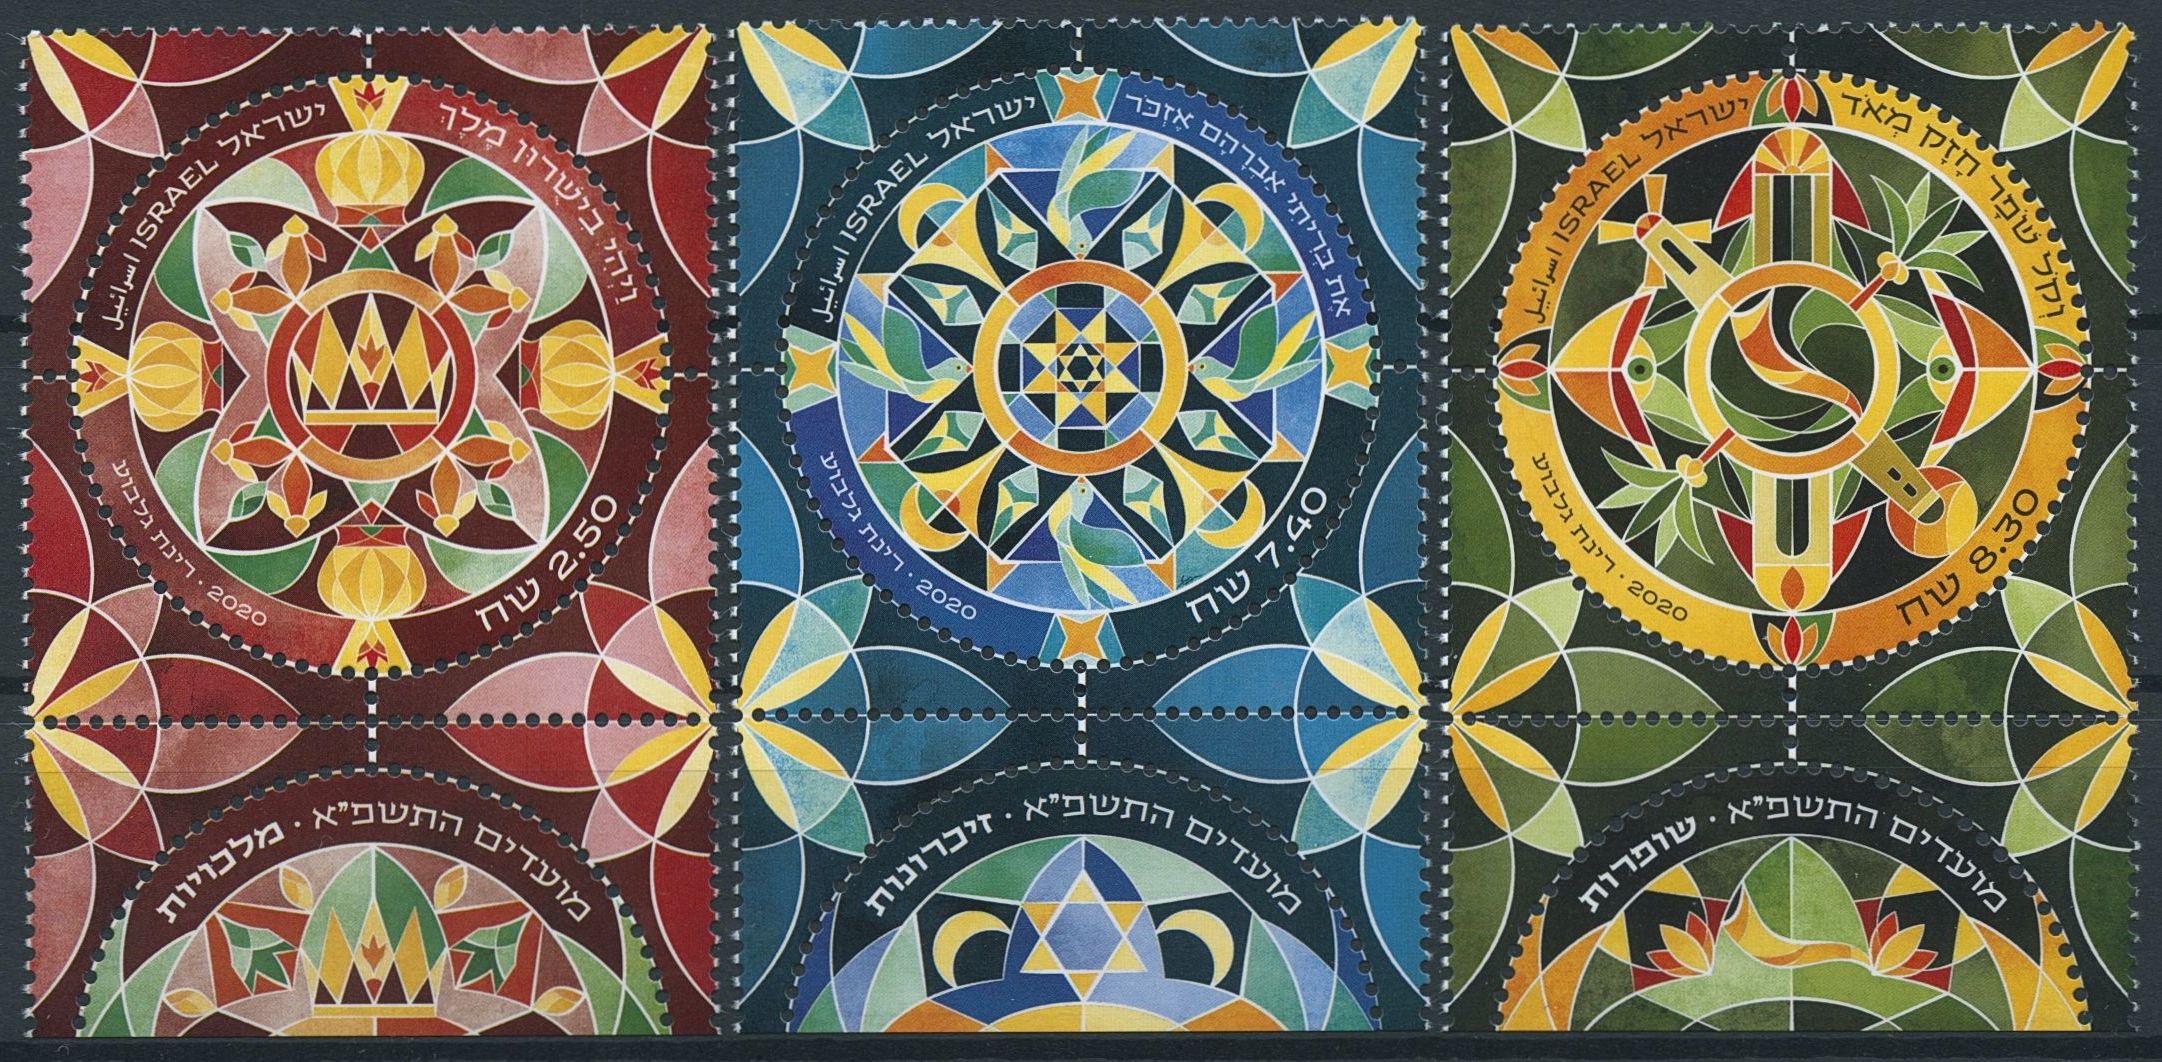 Israel Festivals Stamps 2020 MNH Modern Jewish Art Mandalas Cultures 3v Set